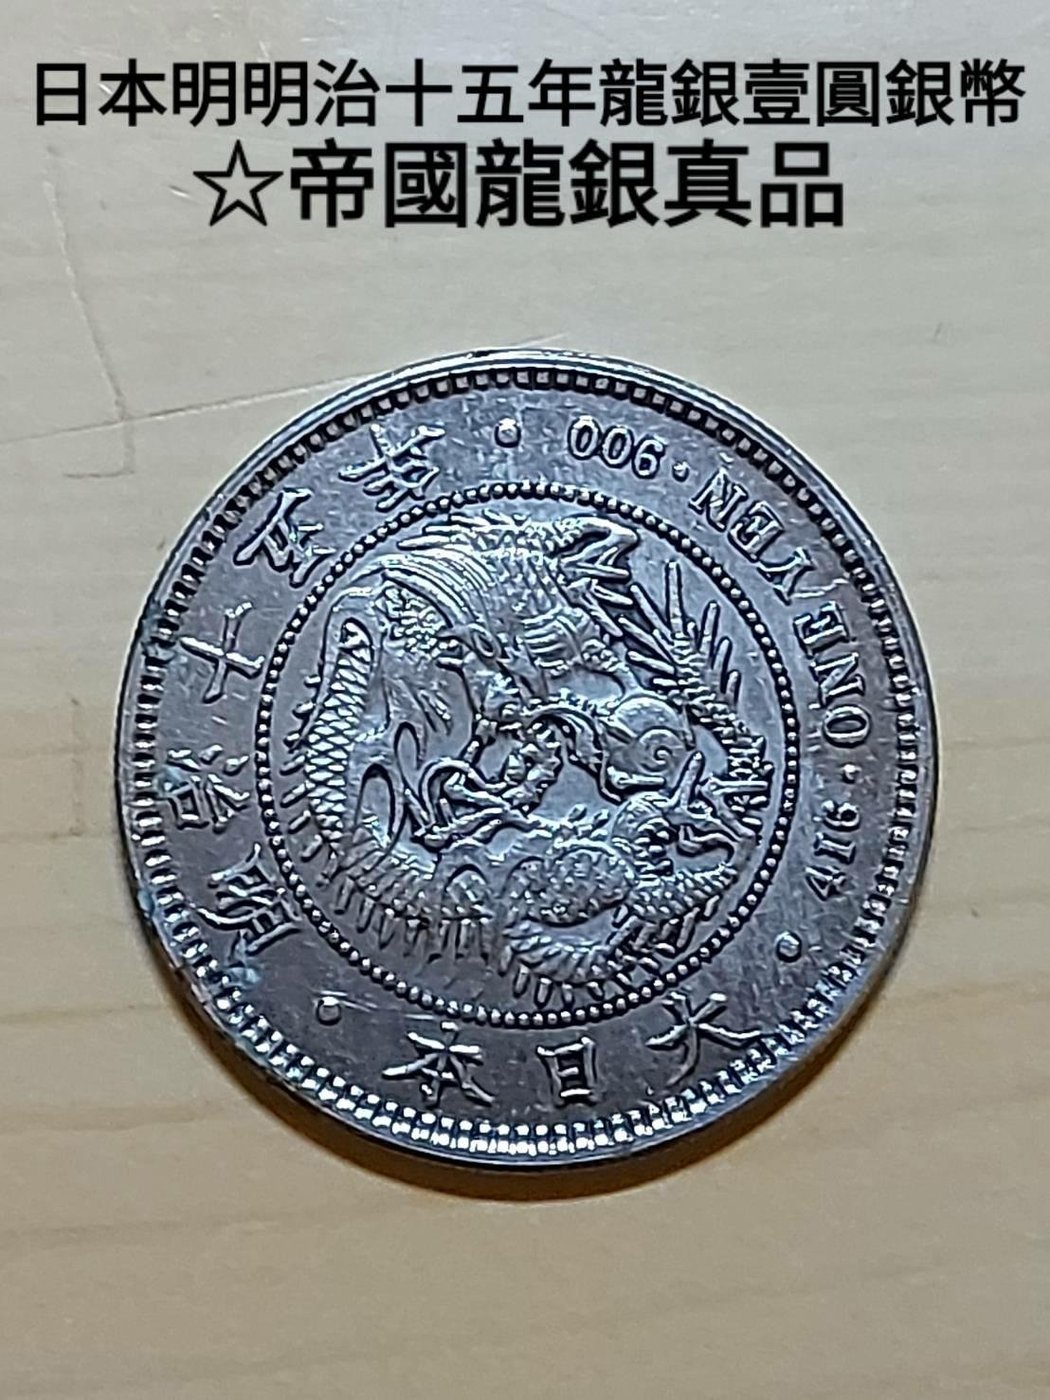 日本明治十五年發行，龍銀一圓現在使用的日本貨幣單位「圓」（円